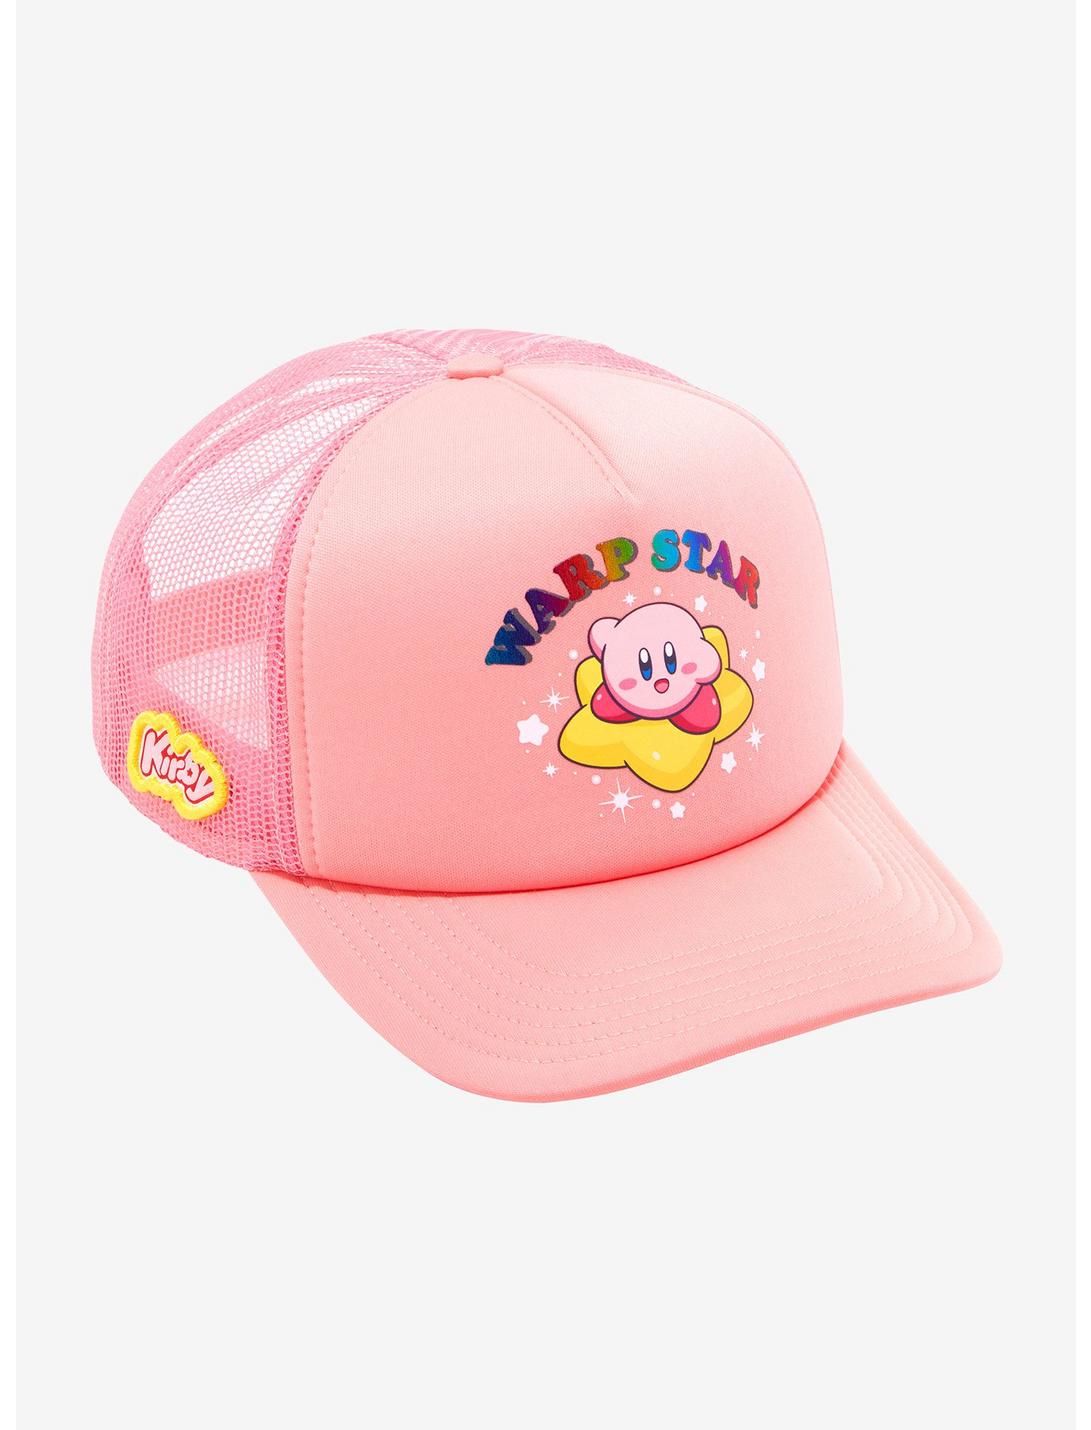 Kirby Warp Star Trucker Hat, , hi-res